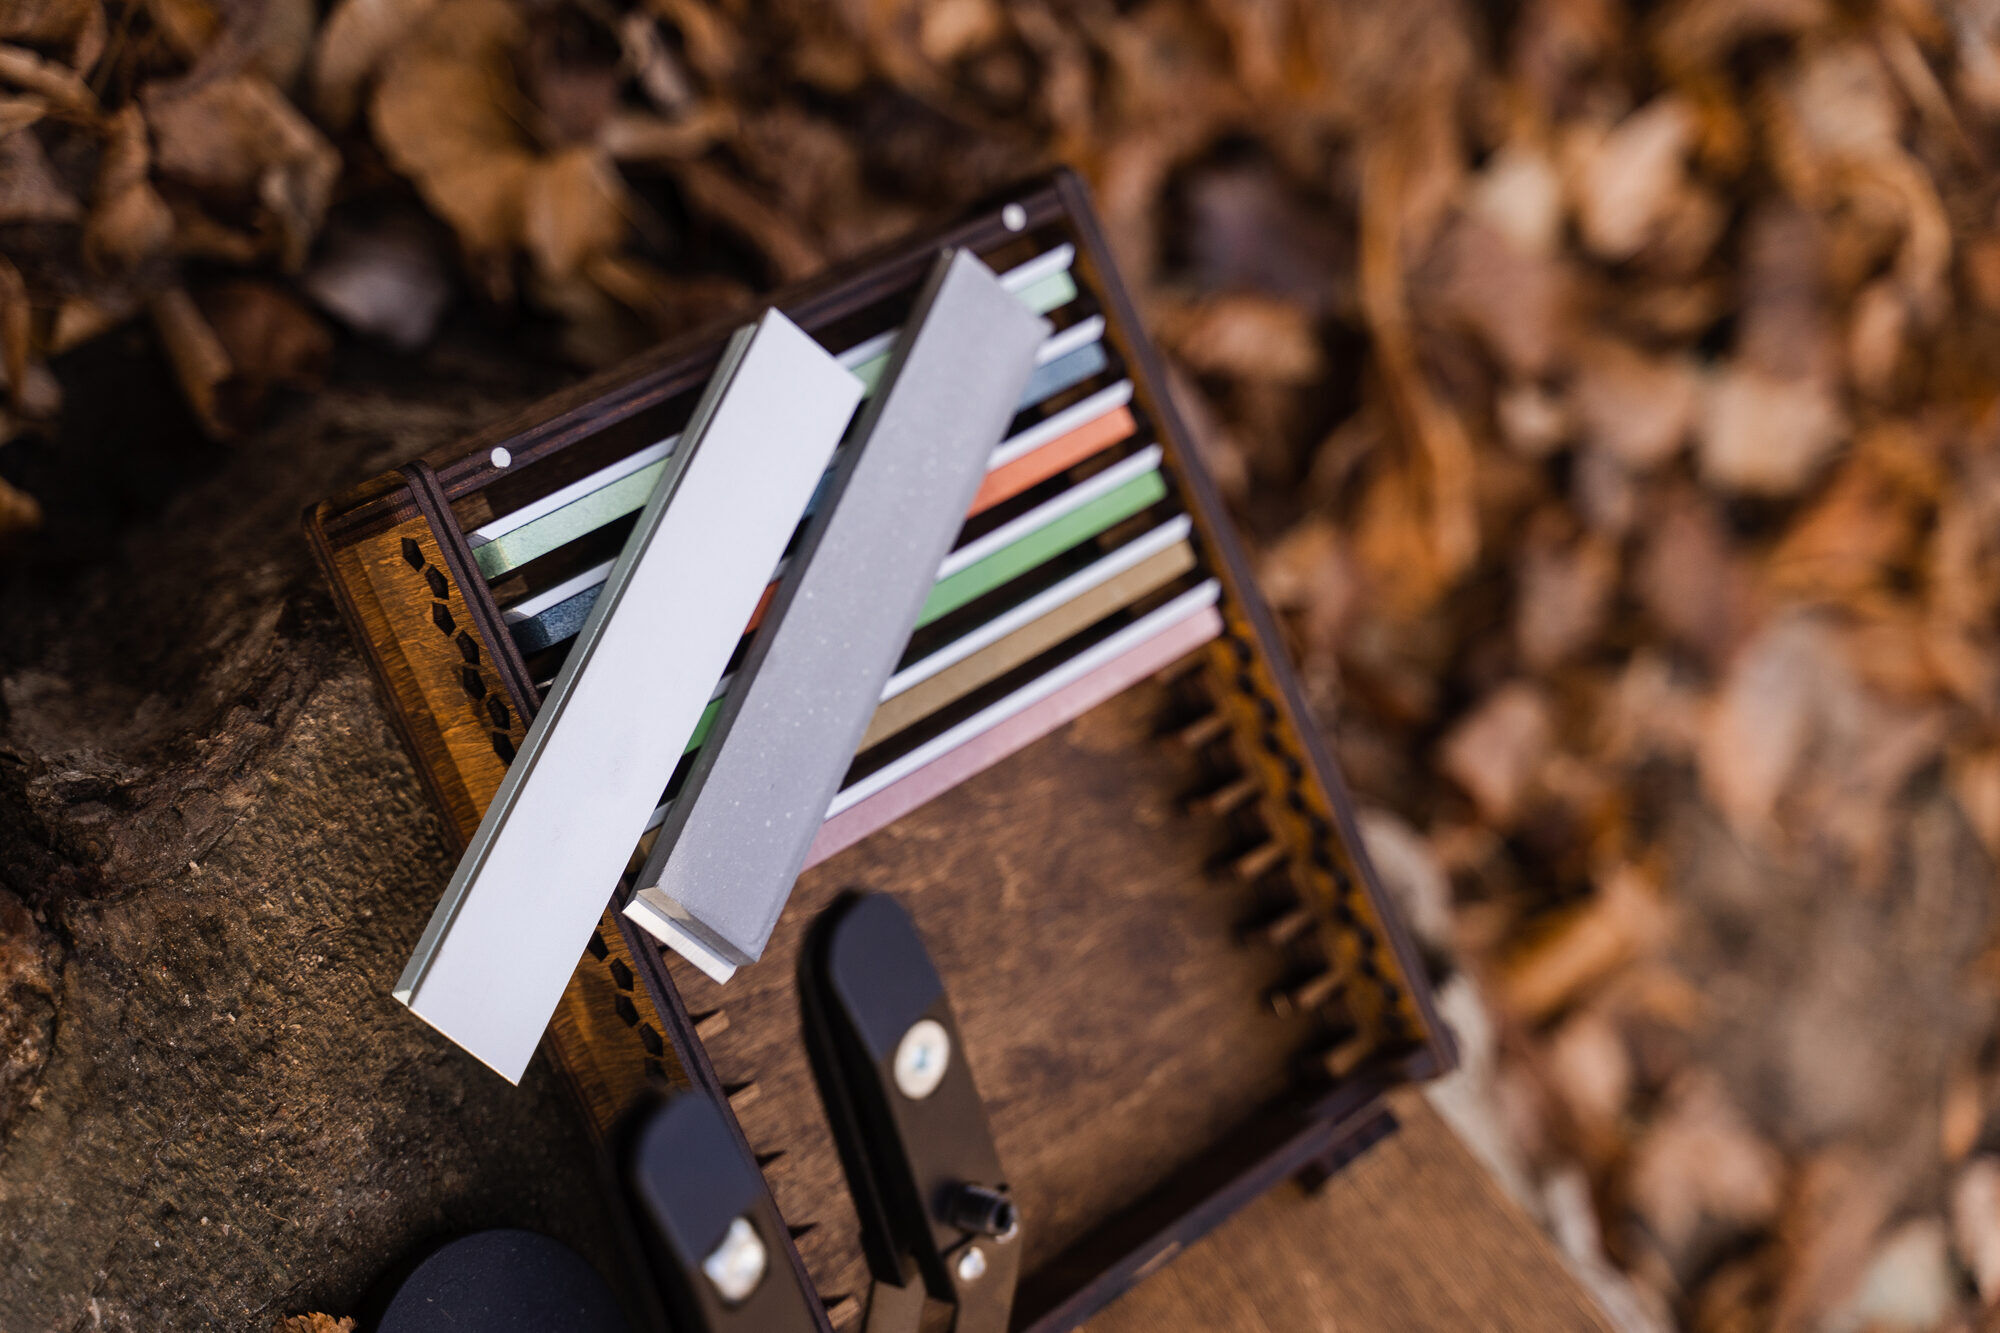 Professional knife sharpener kit.